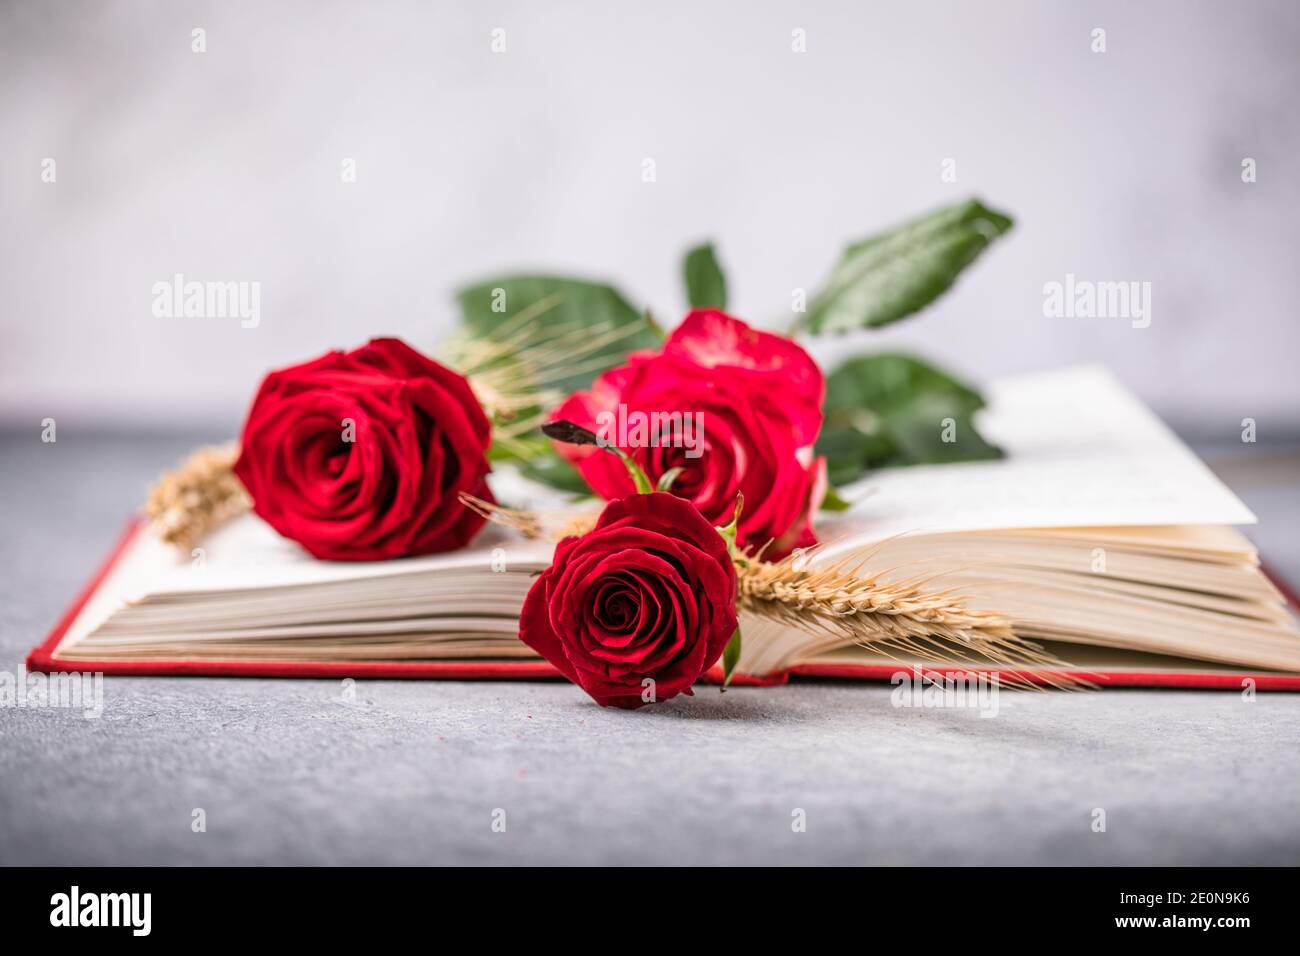 Rose et livre, cadeau traditionnel pour Sant Jordi, le Saint Georges Day. C'est la version de Catalunya de la Saint-Valentin Banque D'Images